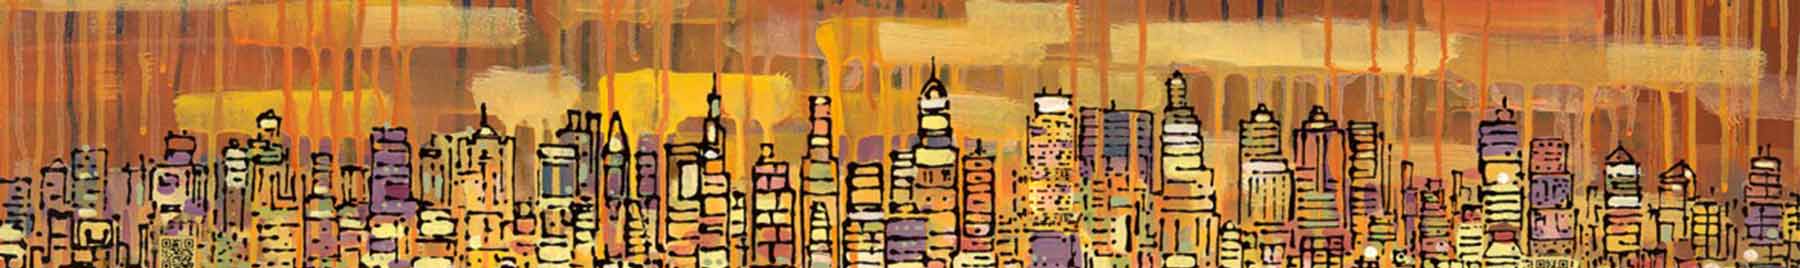 Tony Taj, The Skyline, mixed media on canvas, 2011, detail